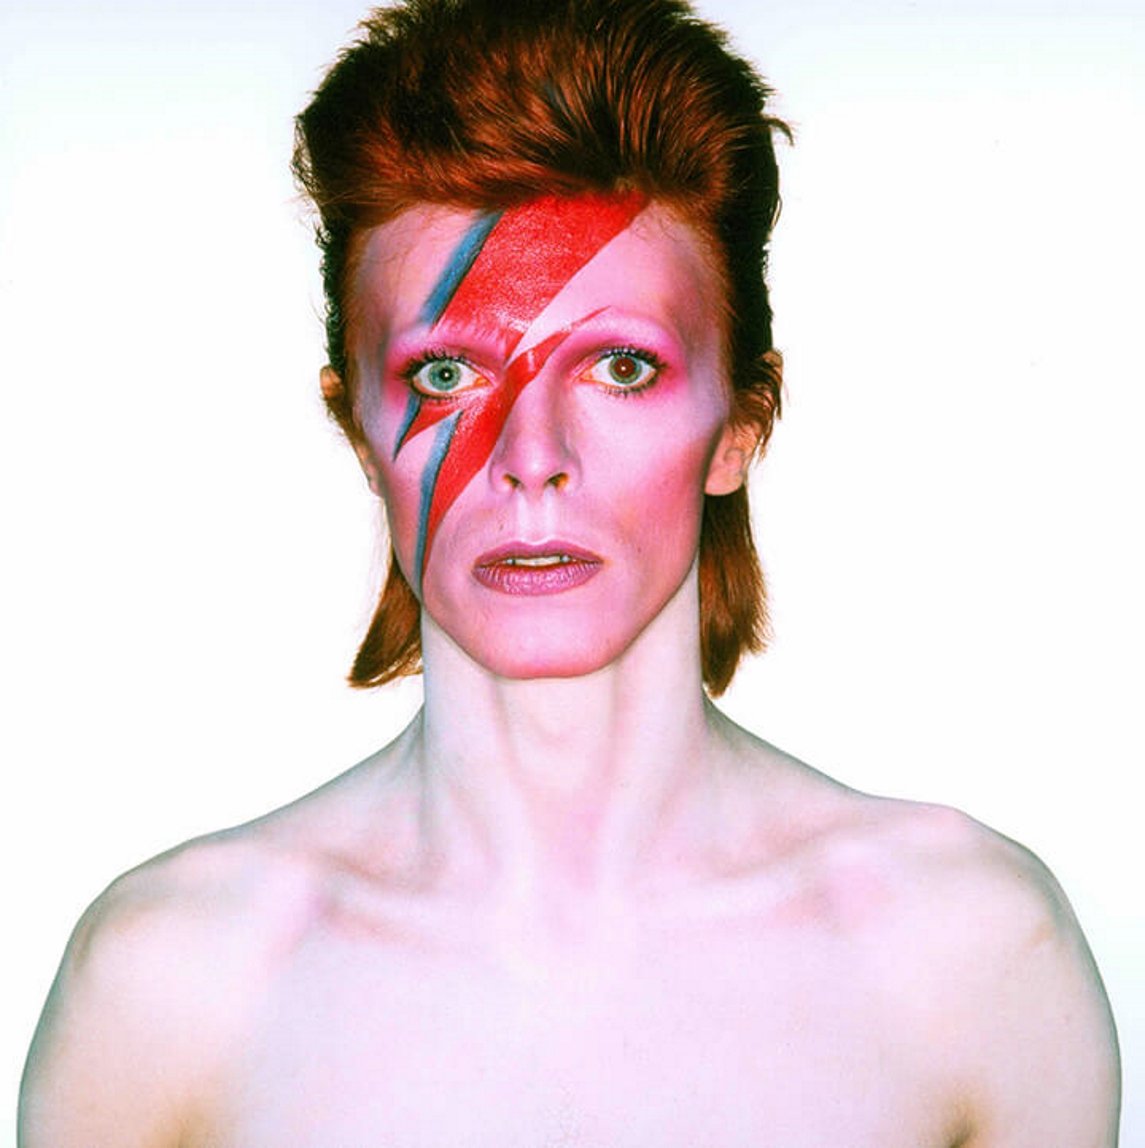 David Bowie, l'estrella del rock que venia els seus quadres per 4 dòlars